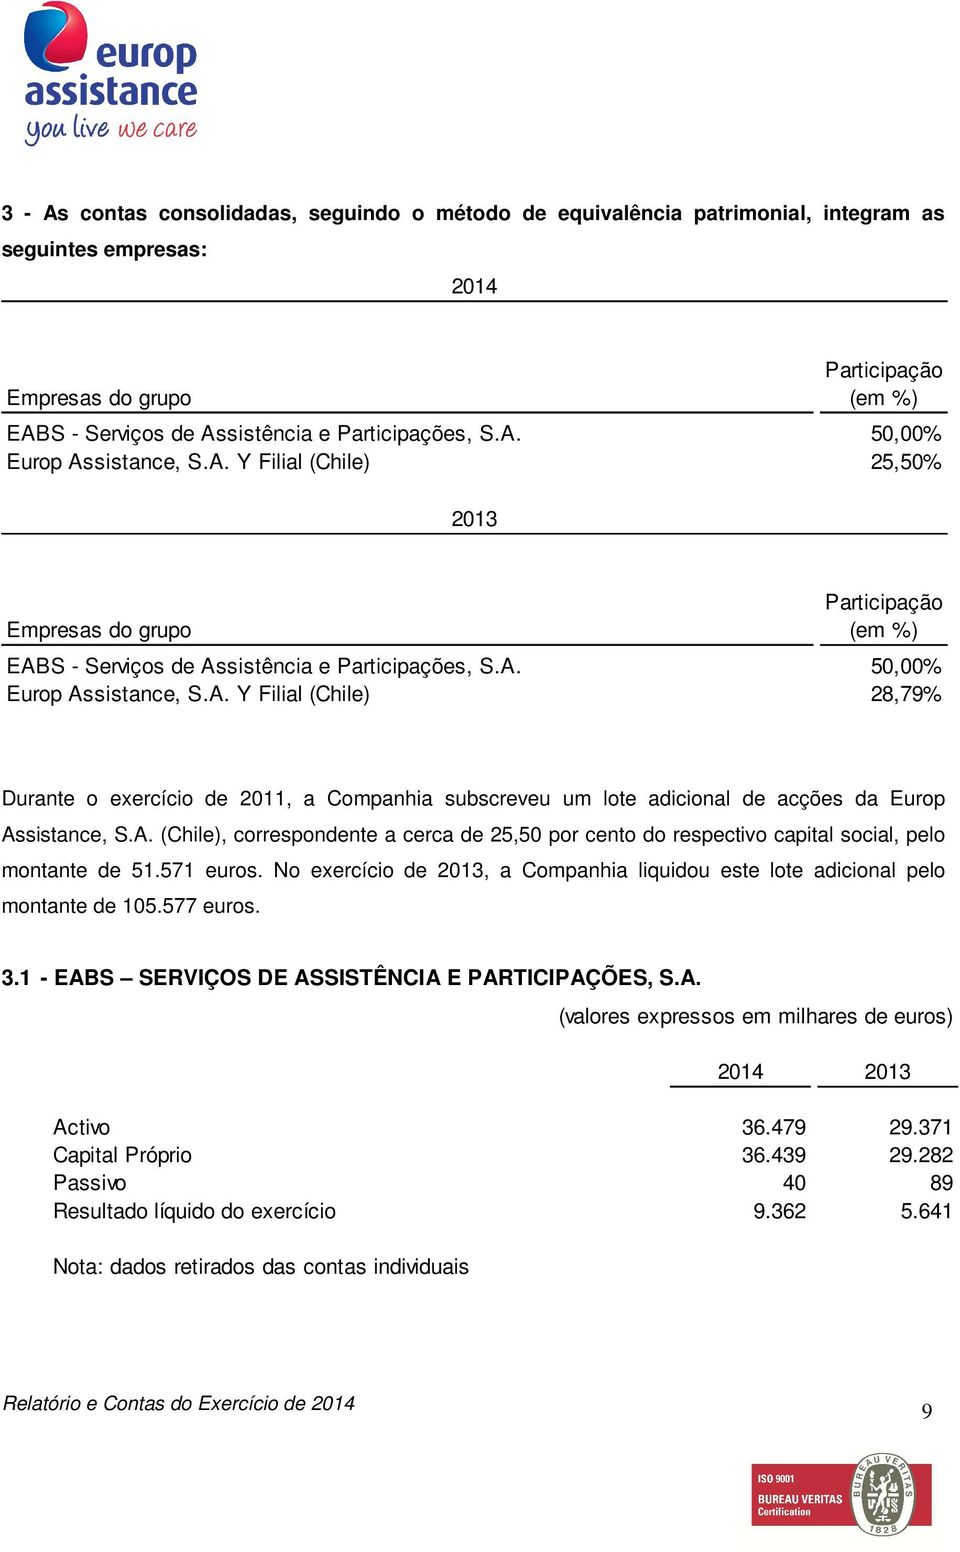 A. (Chile), correspondente a cerca de 25,50 por cento do respectivo capital social, pelo montante de 51.571 euros. No exercício de 2013, a Companhia liquidou este lote adicional pelo montante de 105.